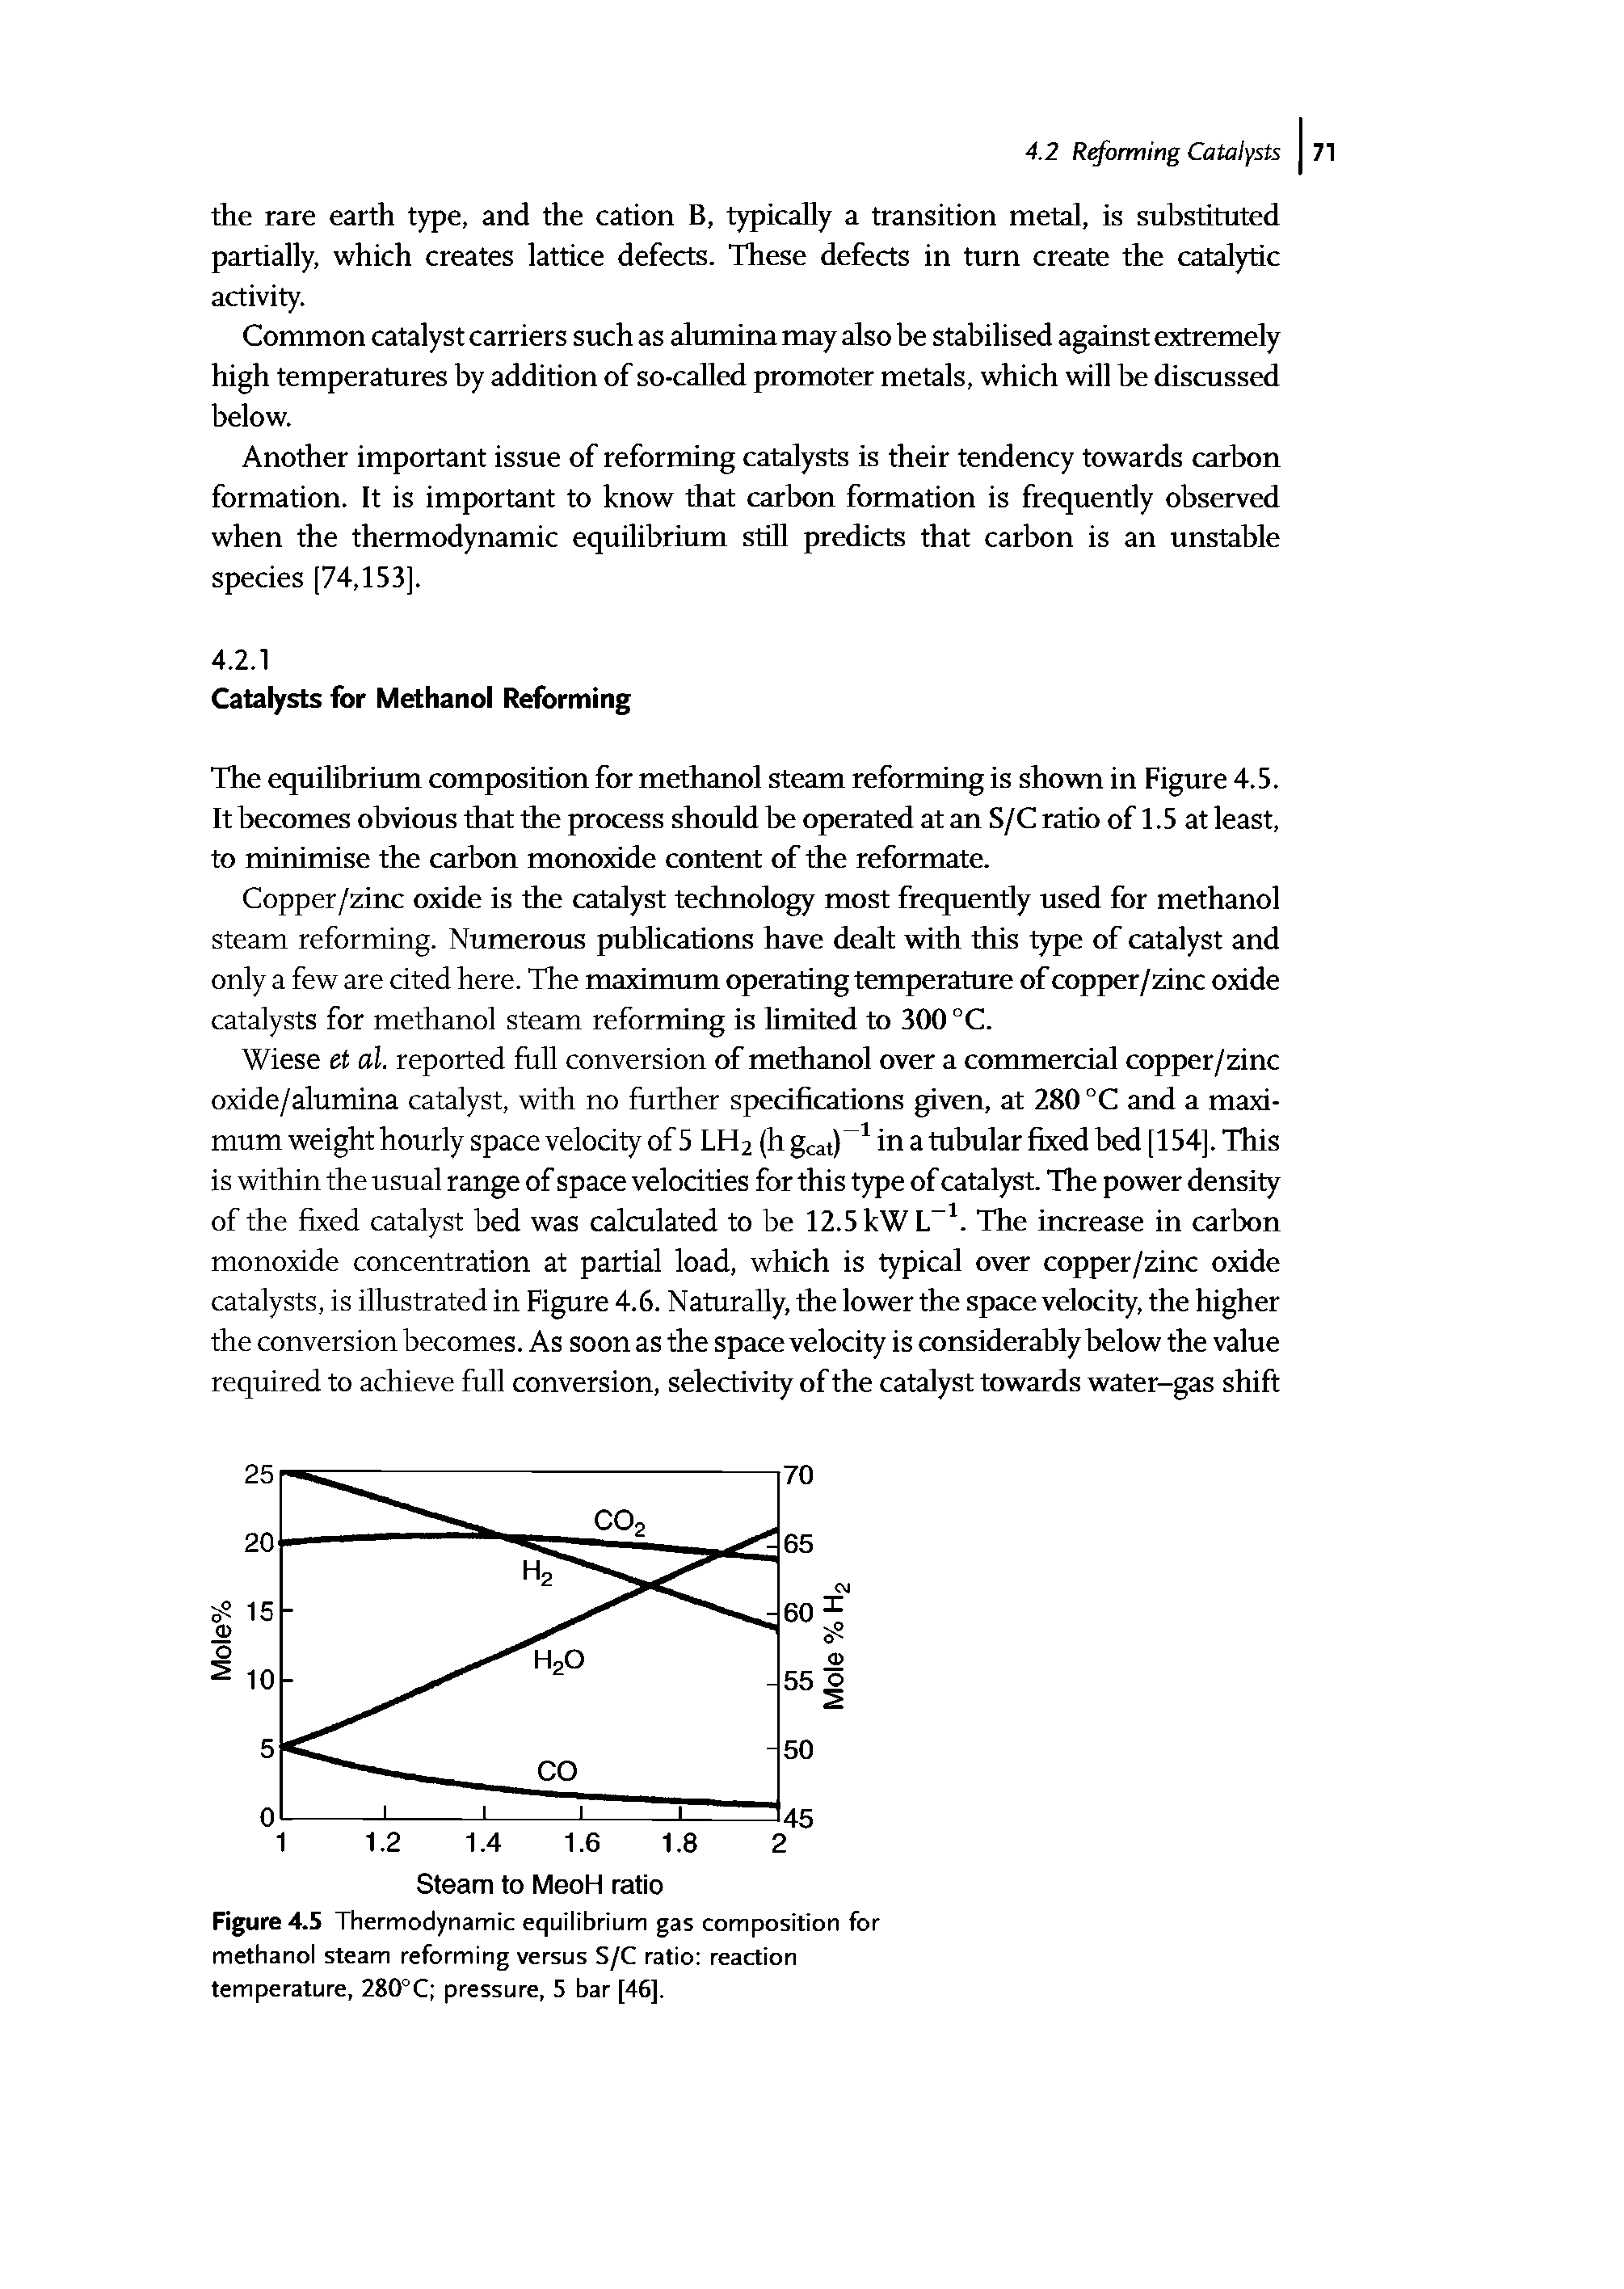 Figure 4.5 Thermodynamic equilibrium gas composition for methanol steam reforming versus S/C ratio reaction temperature, 280°C pressure, 5 bar [46].